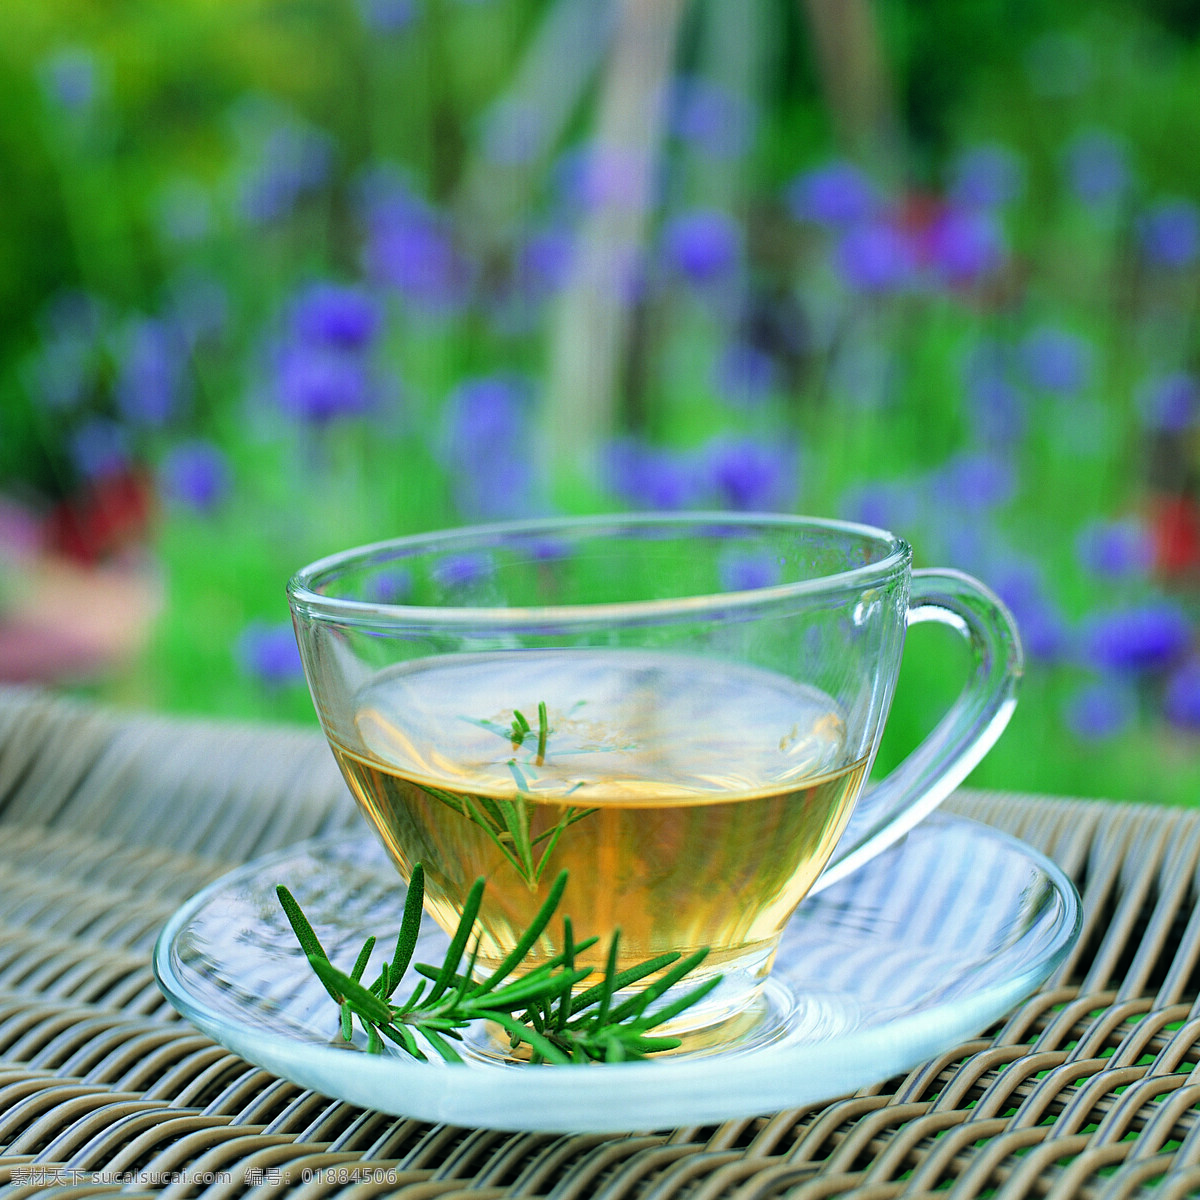 全球 首席 大百科 玻璃杯 茶杯 茶叶 茶饮 喝茶 花草 花茶 健康 品茶 清茶 生物世界